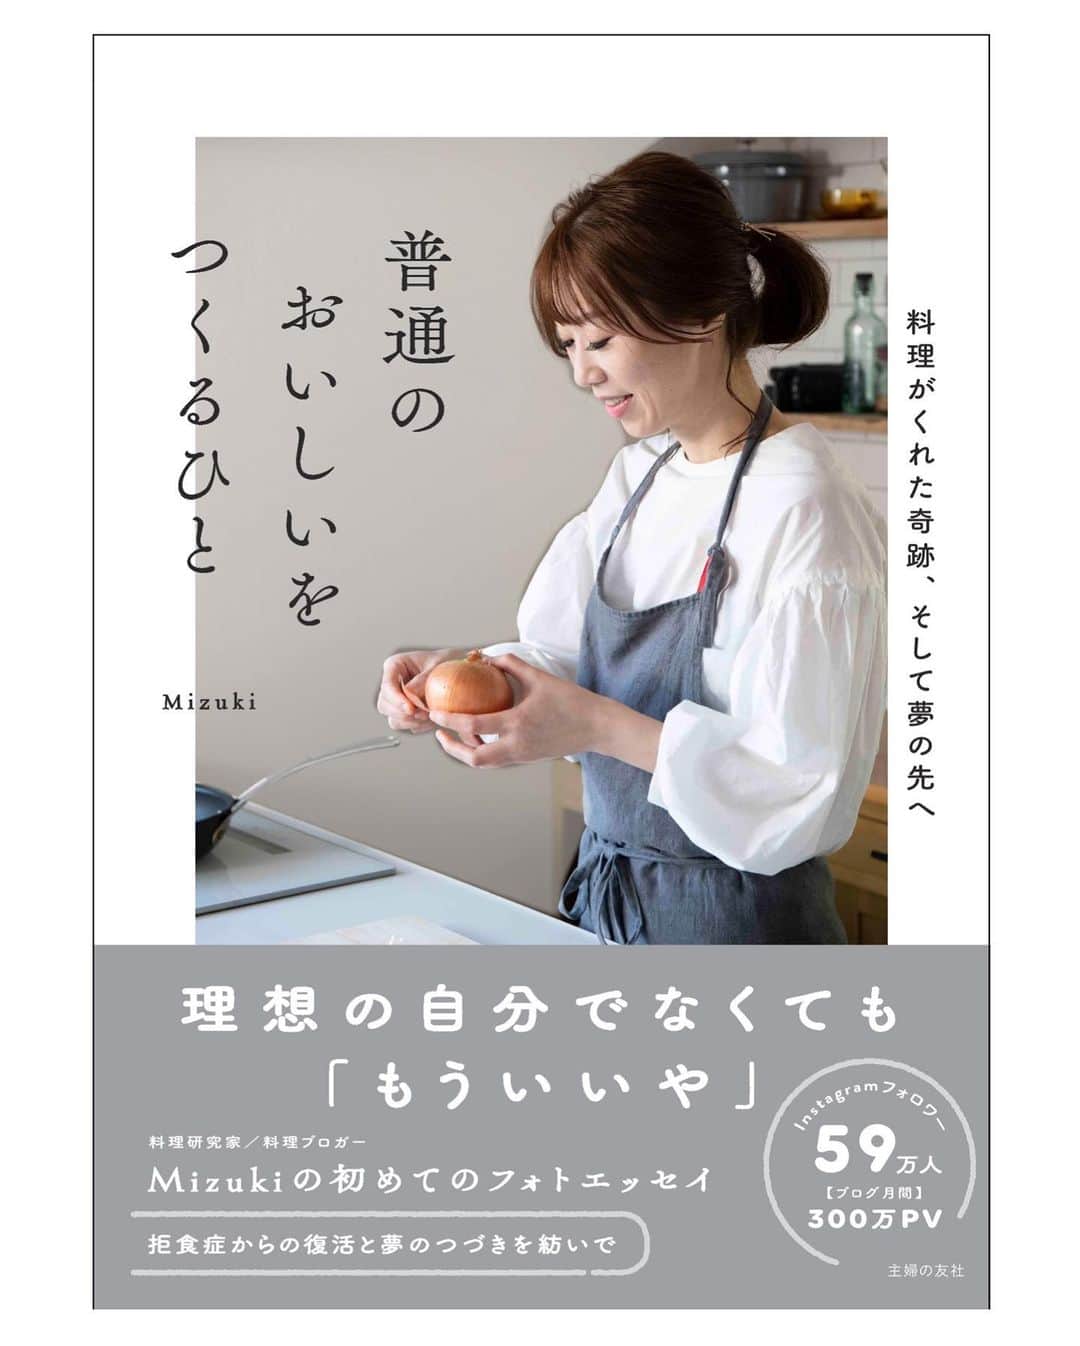 Mizuki【料理ブロガー・簡単レシピ】さんのインスタグラム写真 - (Mizuki【料理ブロガー・簡単レシピ】Instagram)「・﻿ 【#レシピ 】ーーーーーーーーーー﻿ 混ぜて焼くだけ！チーズテリーヌ﻿ ーーーーーーーーーーーーーーーー﻿ ﻿ ﻿ ﻿ おはようございます(*^^*)﻿ ﻿ 今日ご紹介させていただくのは﻿ \\ チーズテリーヌ //﻿ 身近な材料だけを使用して﻿ とろける食感に仕上げました♩﻿ ﻿ しかも、作り方は超簡単♡﻿ 混ぜて焼くだけ(*´艸`)﻿ ﻿ これ失敗なく作れるので﻿ お気軽にお試し下さいね(*^^*)﻿ ﻿ ﻿ ﻿ ＿＿＿＿＿＿＿＿＿＿＿＿＿＿＿＿＿＿＿＿﻿ 【18cmパウンド型1台分】﻿ クリームチーズ...200g﻿ ●砂糖...70g﻿ ●卵...2個﻿ ●レモン汁...小2﻿ ●プレーンヨーグルト...100g﻿ ●生クリーム...100ml﻿ 薄力粉...大1﻿ ﻿ (準備)クリームチーズは室温に戻して柔らかくする。型にシートを敷く。湯煎焼き用のお湯を沸かす。オーブンを180度に予熱する。﻿ 1.ボウルにクリームチーズを入れて泡立て器で柔らかく練り、●を上から順に加えてその都度よく混ぜる。最後に薄力粉をふるい入れて更に混ぜ、型に注ぐ。﻿ 2. 型をバット(又は天板)に乗せてお湯を注ぎ、予熱したオーブンで50分程湯煎焼きする。焼けたらアミに乗せて冷まし、冷蔵庫で一晩以上冷やす。﻿ ￣￣￣￣￣￣￣￣￣￣￣￣￣￣￣￣￣￣￣￣﻿ ﻿ ﻿ ﻿ 《ポイント》﻿ ♦︎クリームチーズは十分に柔らかくしておいて下さい♩レンチンしてもOK☆﻿ ♦︎薄力粉は茶こしでふるうと◎﻿ ♦︎湯煎焼きのお湯は、型が1.5cm浸かる程度に入れておくと◎﻿ ♦︎一晩〜二晩寝かせるとより美味しくなります♩﻿ ﻿ ﻿ ﻿ ﻿ ﻿ ﻿ ﻿ ﻿ 📕新刊予約開始しました📕﻿ 【ラクしておいしい！#1品晩ごはん 】﻿ ￣￣￣￣￣￣￣￣￣￣￣￣￣￣￣￣￣﻿ 私たちだってヘトヘトな日がある•••﻿ 毎日何品も作っていられない•••﻿ もうごはんに悩みたくない😢﻿ そう思うことってありませんか？﻿ そんな時、1品ごはんはいかがでしょう？﻿ というご提案です✨﻿ ﻿ ﻿ 【1品ごはん】は﻿ 副菜いらずで全てがシンプル！﻿ ￣￣￣￣￣￣￣￣￣￣￣￣￣￣￣￣￣￣﻿ 一品つくるだけでいいから﻿ 献立を考えなくてよし！﻿ ￣￣￣￣￣￣￣￣￣￣￣￣￣￣￣￣￣￣﻿ 悩まない、疲れない、﻿ 気力や時間がなくてもなんとかなる！﻿ ￣￣￣￣￣￣￣￣￣￣￣￣￣￣￣￣￣￣﻿ そんな頼りになる﻿ 便利なお助けごはんです☺️💕﻿ (ハイライトに🔗貼っています✨)﻿ ￣￣￣￣￣￣￣￣￣￣￣￣￣￣￣￣￣﻿ ﻿ ﻿ ﻿ ﻿ ﻿ ⭐️発売中⭐️﻿ ＿＿＿＿＿＿＿＿＿＿＿＿＿＿＿＿＿＿﻿ しんどくない献立、考えました♩﻿ \15分でいただきます/﻿ 📕#Mizukiの2品献立 📕﻿ ﻿ 和食をもっとカジュアルに♩﻿ \毎日のごはんがラクになる/﻿ 📘#Mizukiの今どき和食 📘﻿ ﻿ ホケミレシピの決定版♩﻿ \はじめてでも失敗しない/﻿ 📙ホットケーキミックスのお菓子 📙﻿ ﻿ NHKまる得マガジンテキスト☆﻿ ホットケーキミックスで﻿ 📗絶品おやつ&意外なランチ📗﻿ ￣￣￣￣￣￣￣￣￣￣￣￣￣￣￣￣￣￣﻿ ﻿ ﻿ ﻿ ＿＿＿＿＿＿＿＿＿＿＿＿＿＿＿＿＿＿﻿ レシピを作って下さった際や﻿ レシピ本についてのご投稿には﻿ タグ付け( @mizuki_31cafe )して﻿ お知らせいただけると嬉しいです😊💕﻿ ￣￣￣￣￣￣￣￣￣￣￣￣￣￣￣￣￣￣﻿ ﻿ ﻿ ﻿ ﻿ #ケーキ#チーズケーキ#チーズテリーヌ#クリスマス#Mizuki#簡単レシピ#時短レシピ#節約レシピ#料理#フーディーテーブル#マカロニメイト#おうちごはん#デリスタグラマー#料理好きな人と繋がりたい#食べ物#料理記録#おうちごはんlover#写真好きな人と繋がりたい#foodpic#cooking#recipe#lin_stagrammer#foodporn#yummy#f52grams#チーズテリーヌm」12月21日 7時12分 - mizuki_31cafe